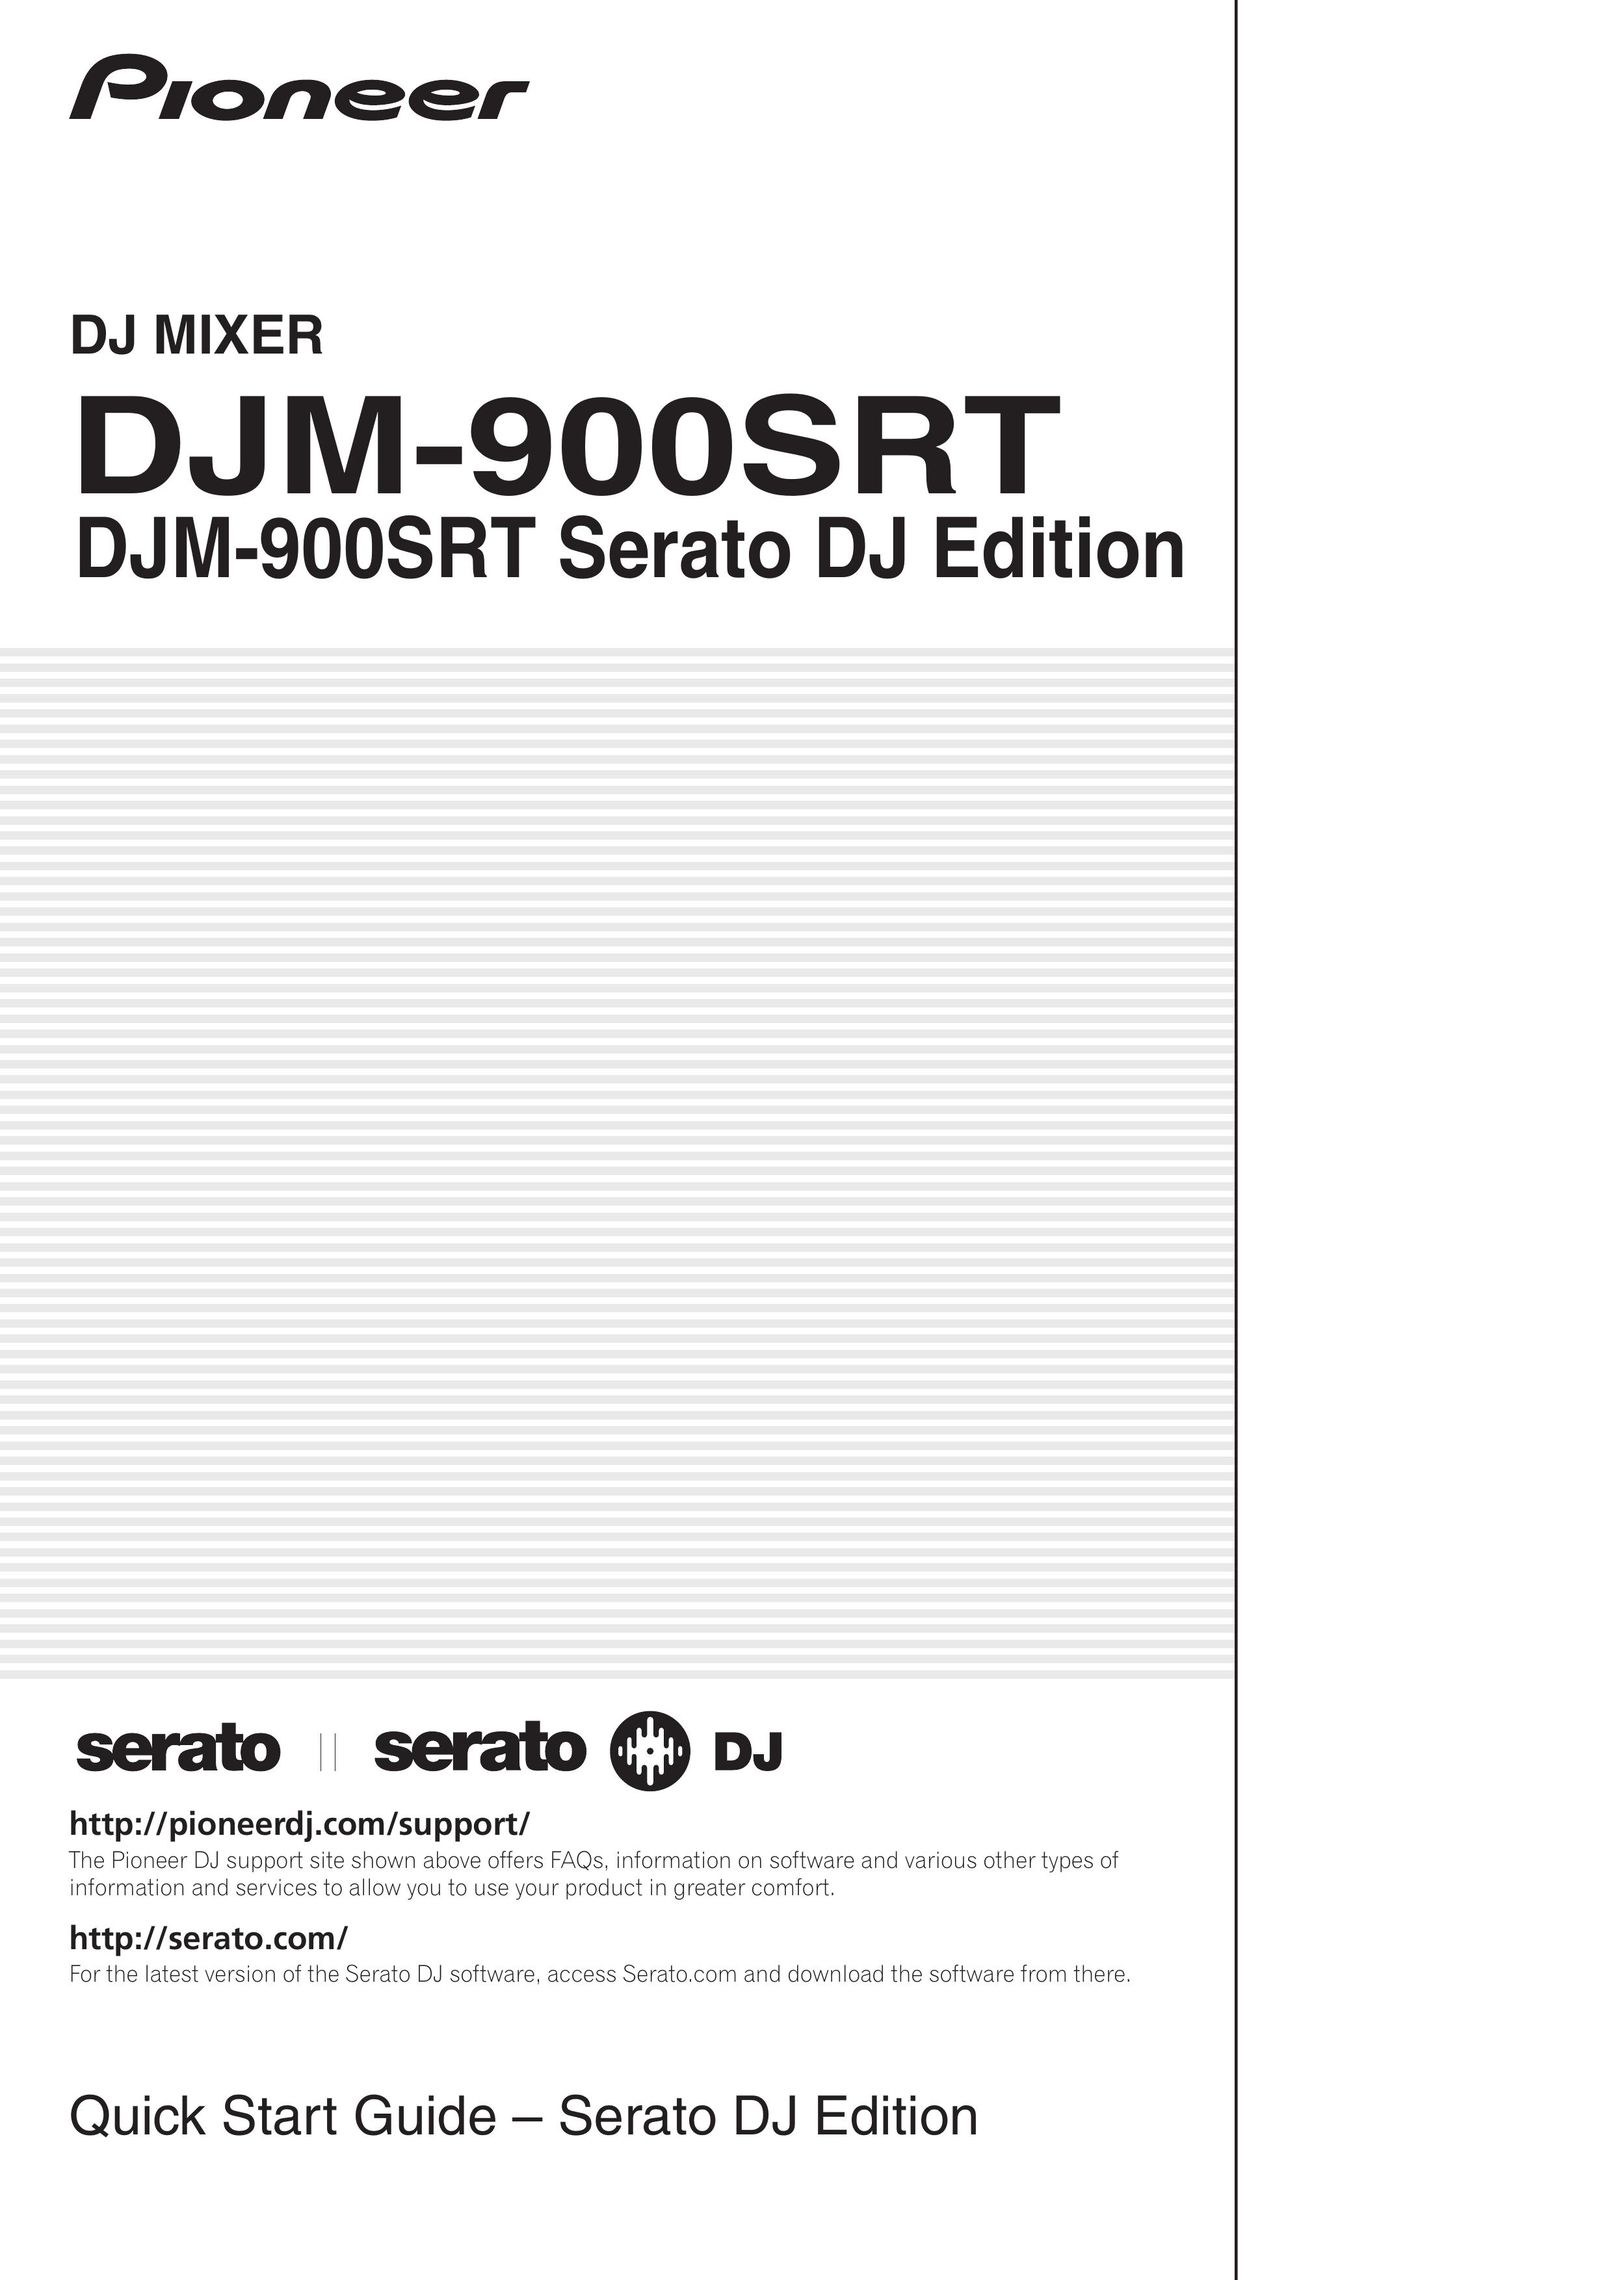 Pioneer DJM-900SRT Serato DJ Edition Mixer User Manual